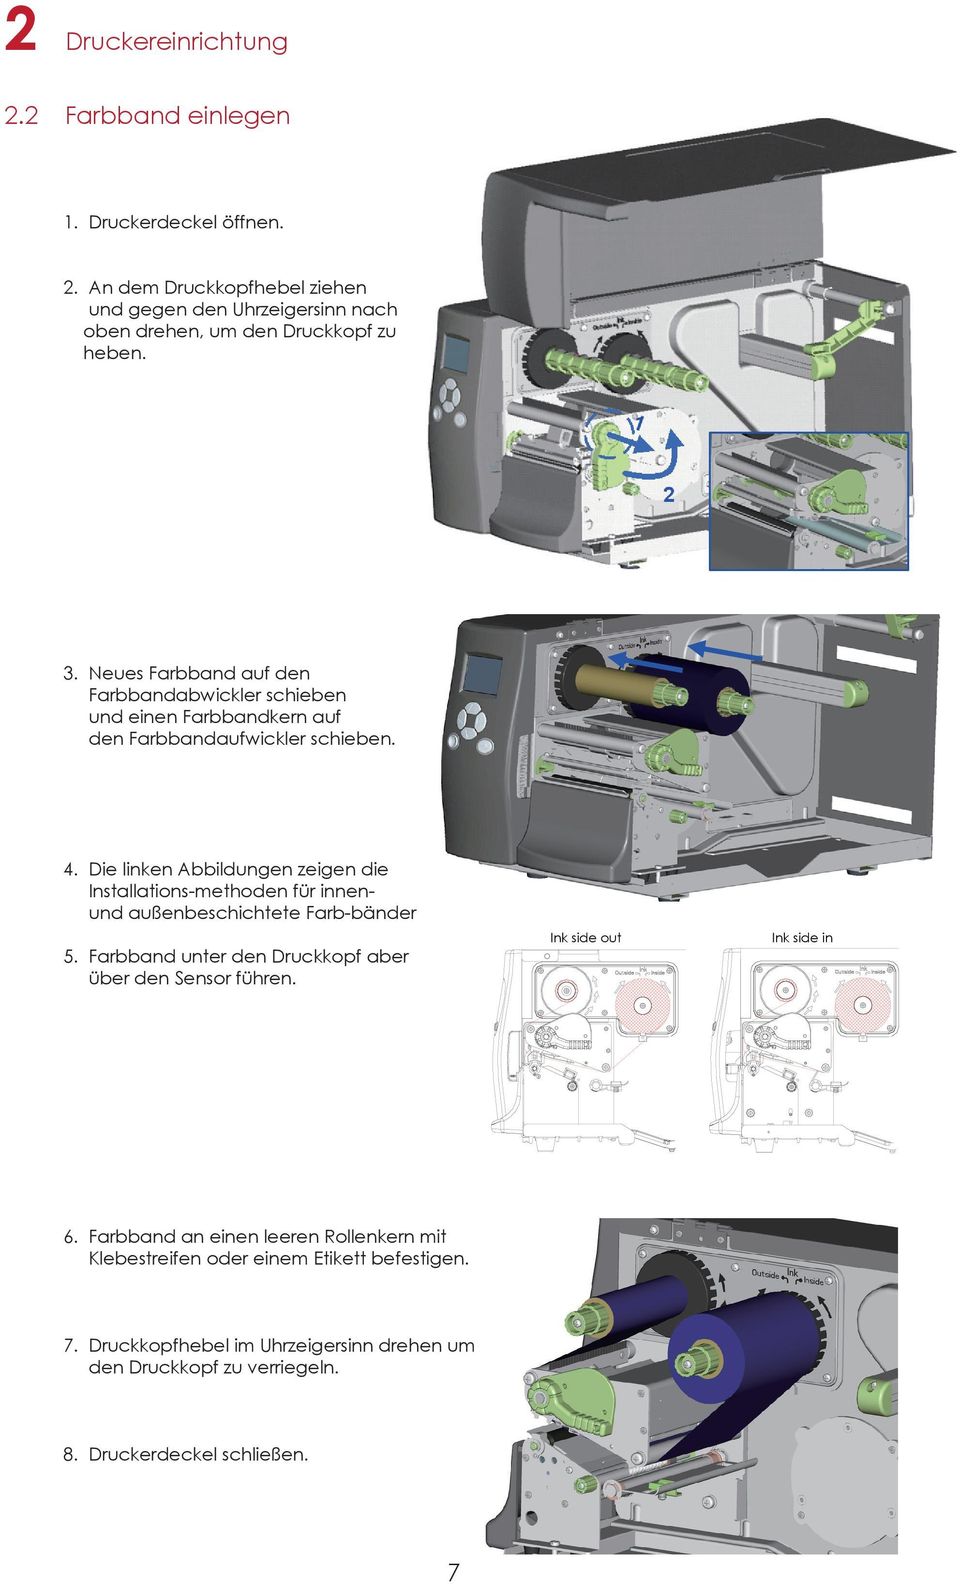 Die linken Abbildungen zeigen die Installations-methoden für innenund außenbeschichtete Farb-bänder 5. Farbband unter den Druckkopf aber über den Sensor führen.